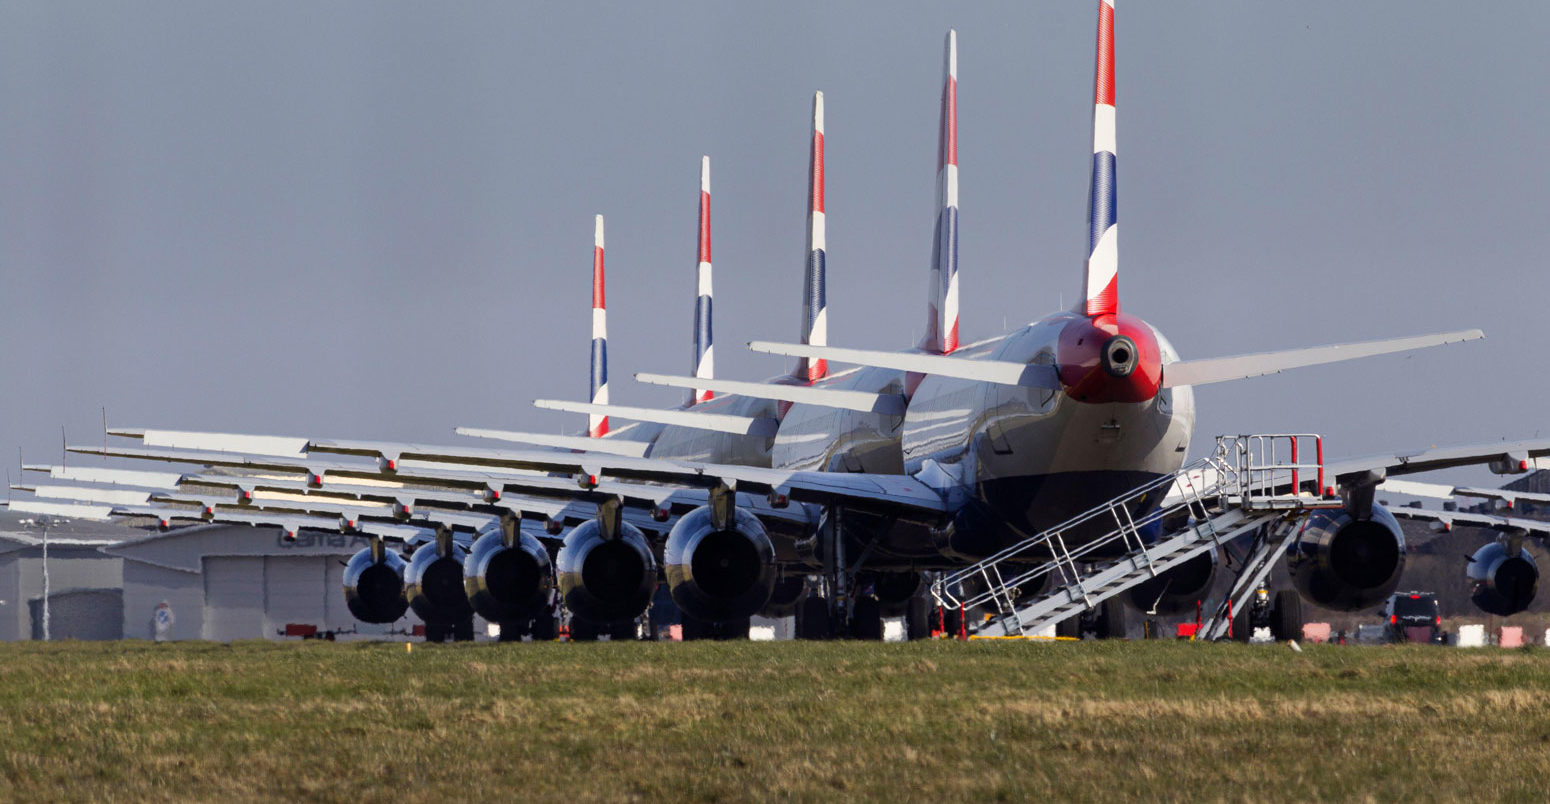 British Airways Airbus fleet parked at Glasgow Airport during the Coronavirus pandemic.